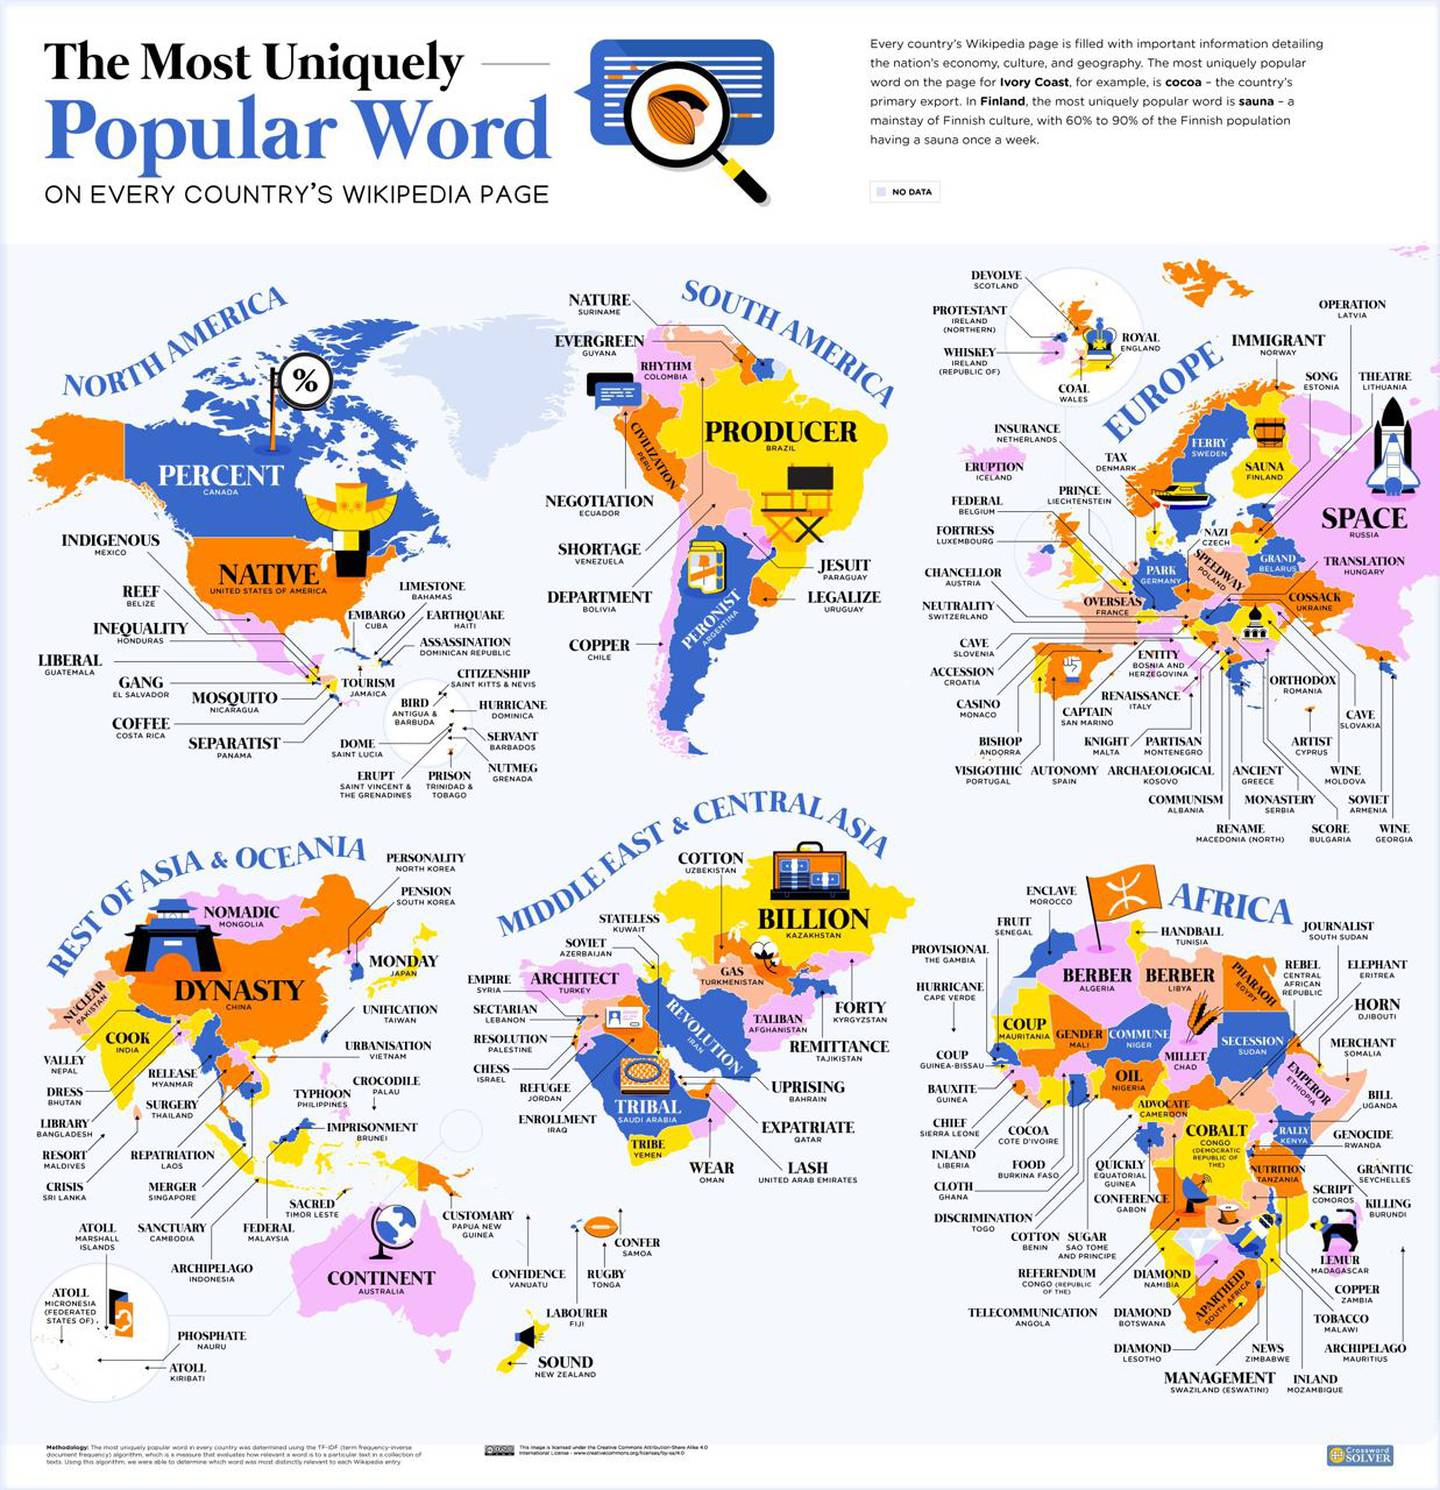 Reddit viraliza un espectacular mapa que muestra las palabras más buscadas por cada país en Wikipedia